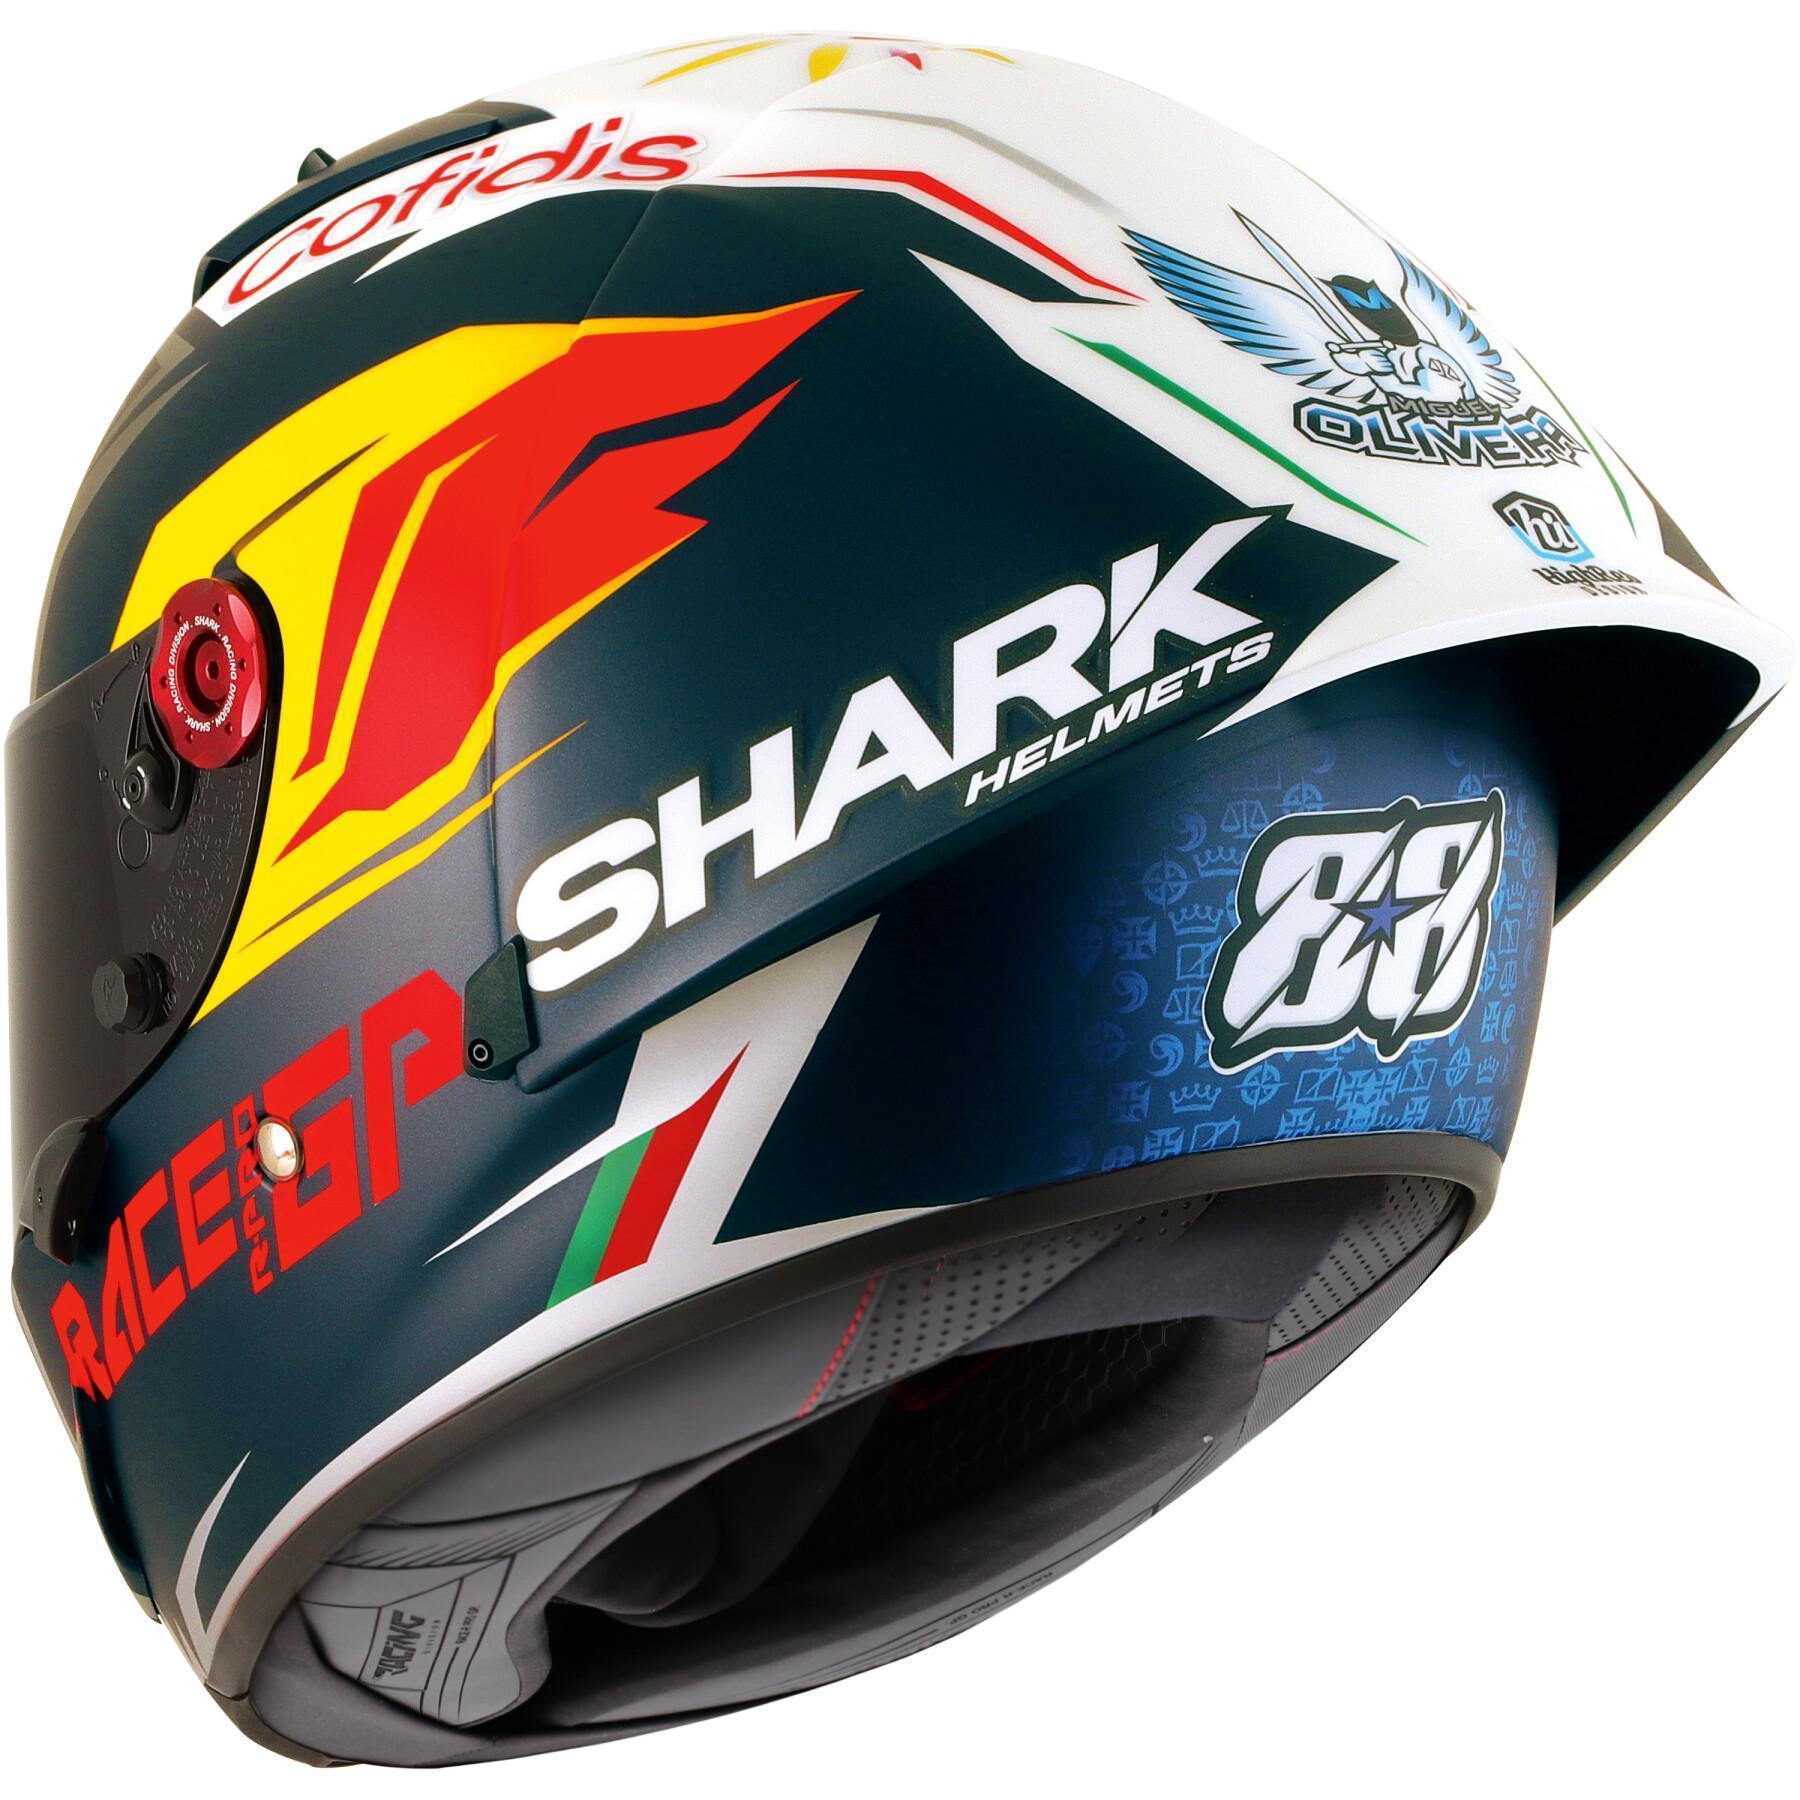 Casco de moto integral Shark race-r pro GP oliveira signature